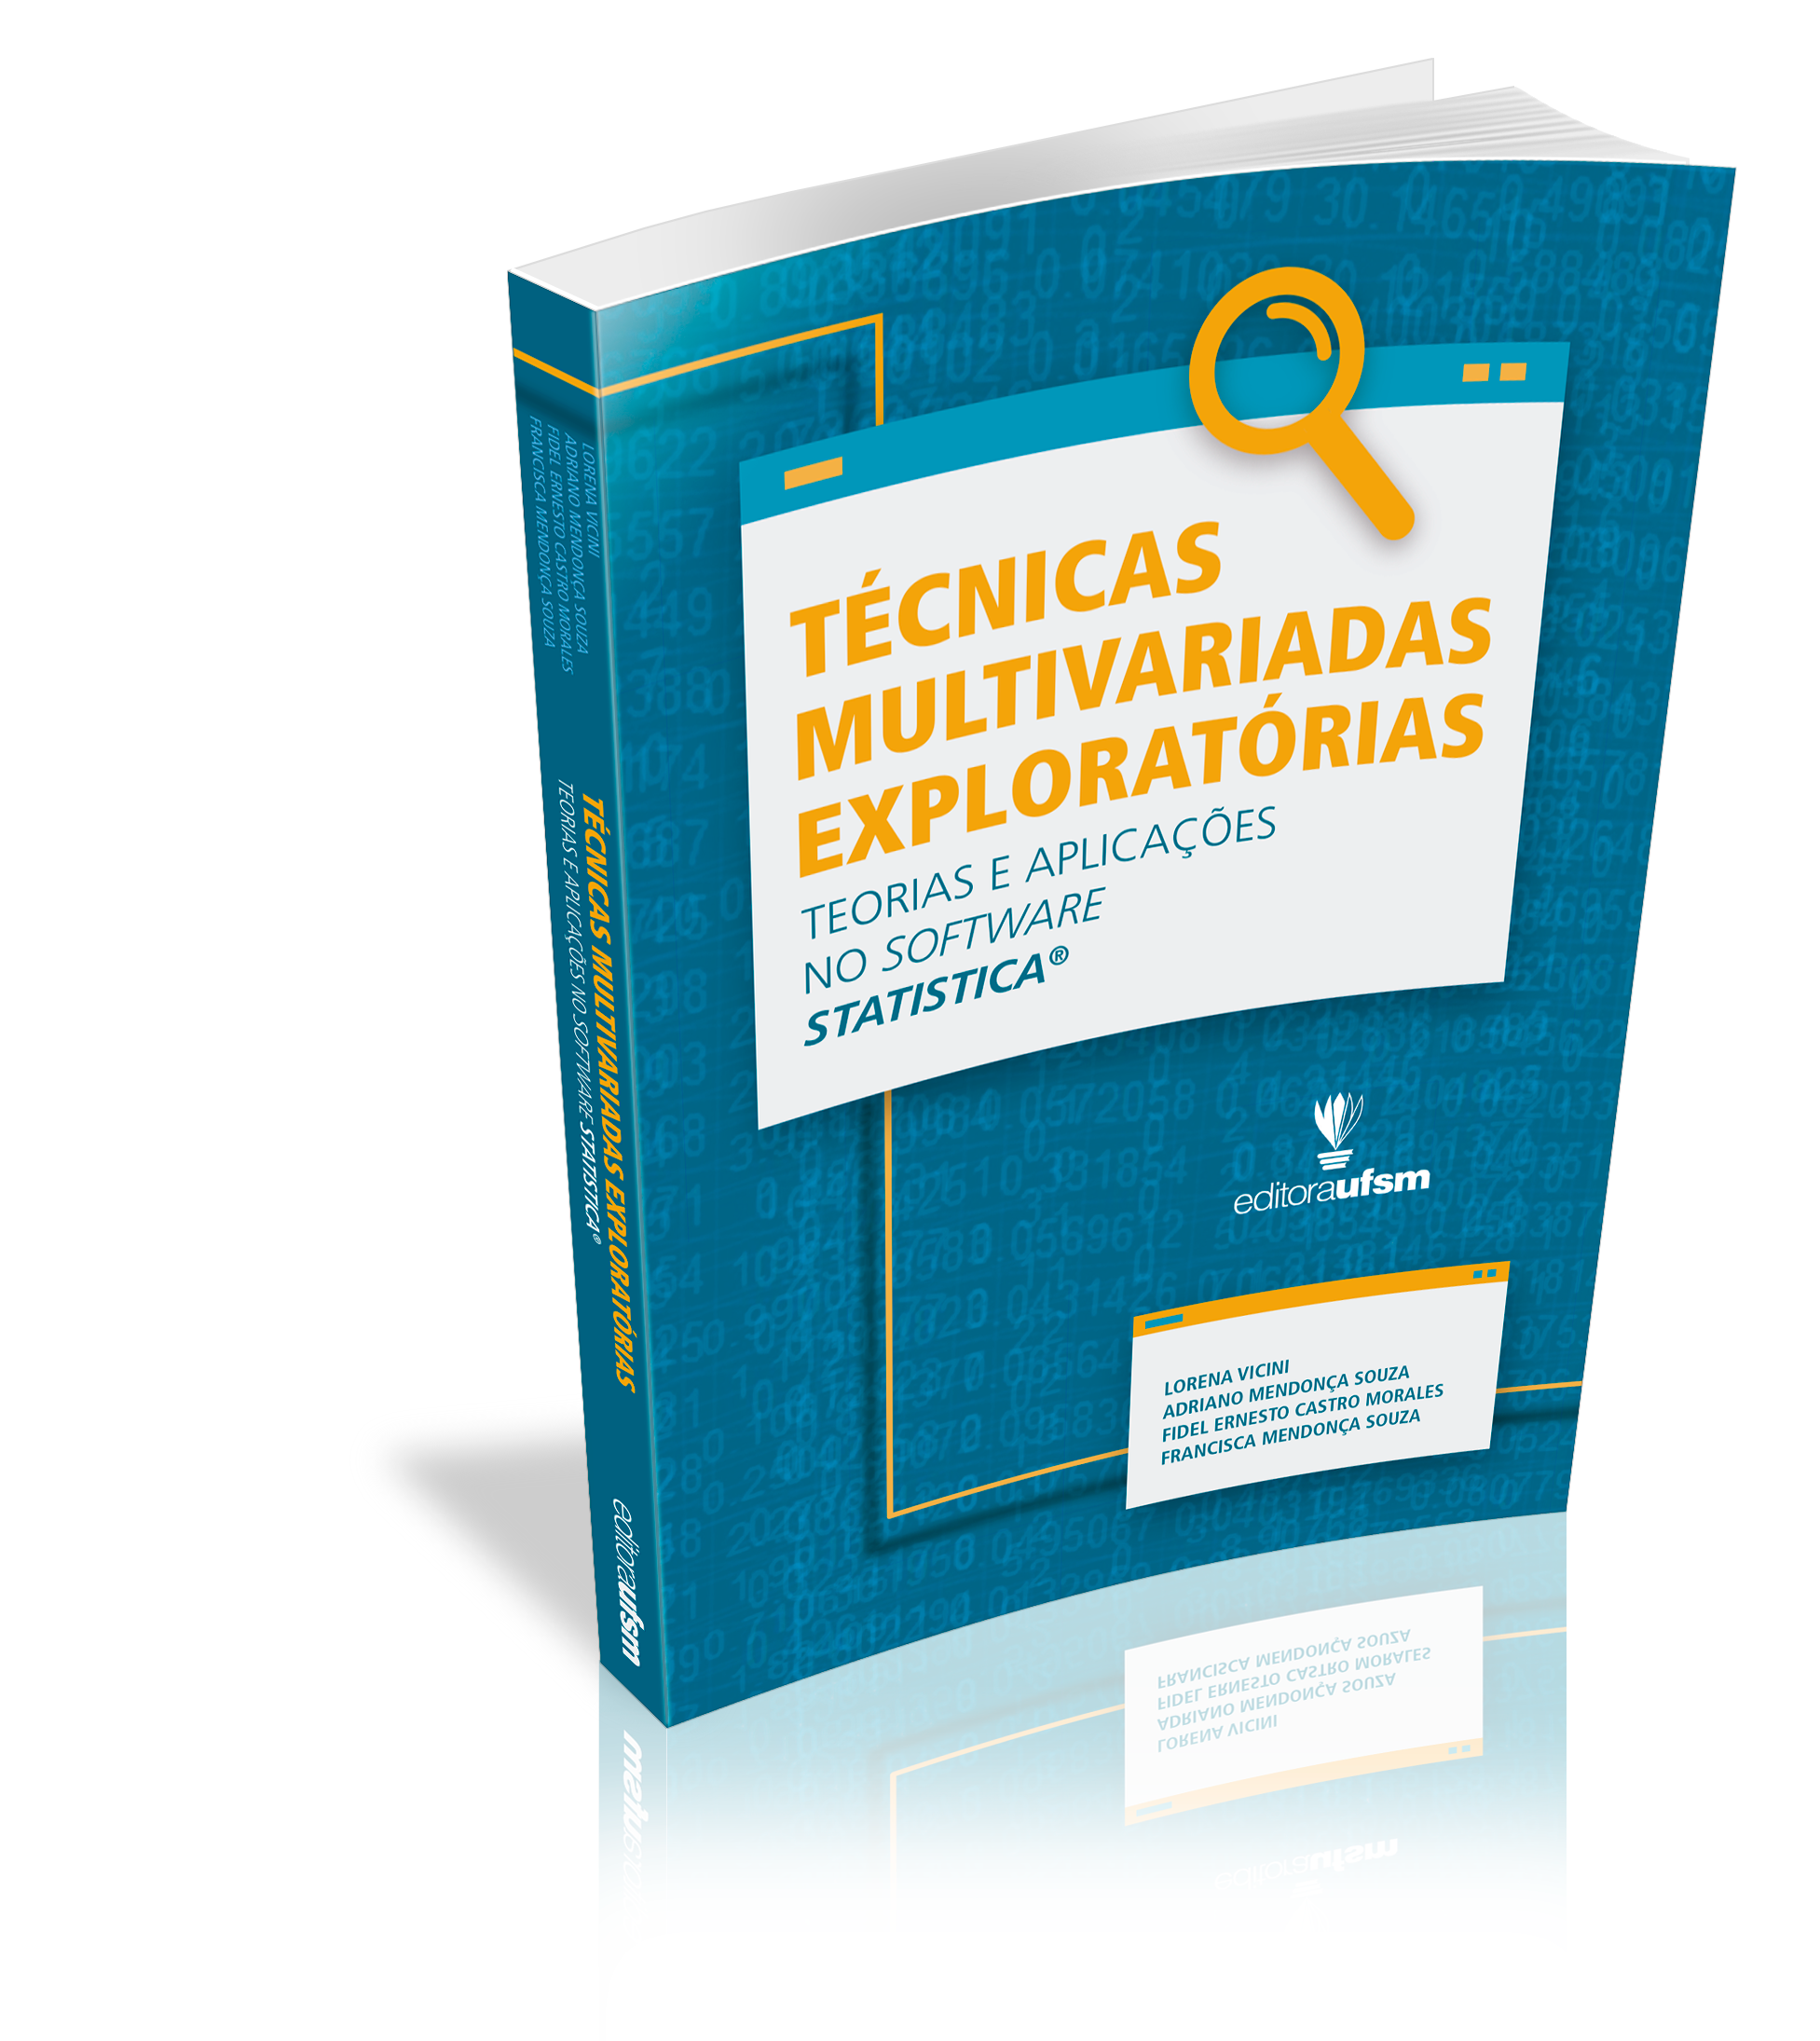 Capa do livro Técnicas Multivariadas Exploratórias